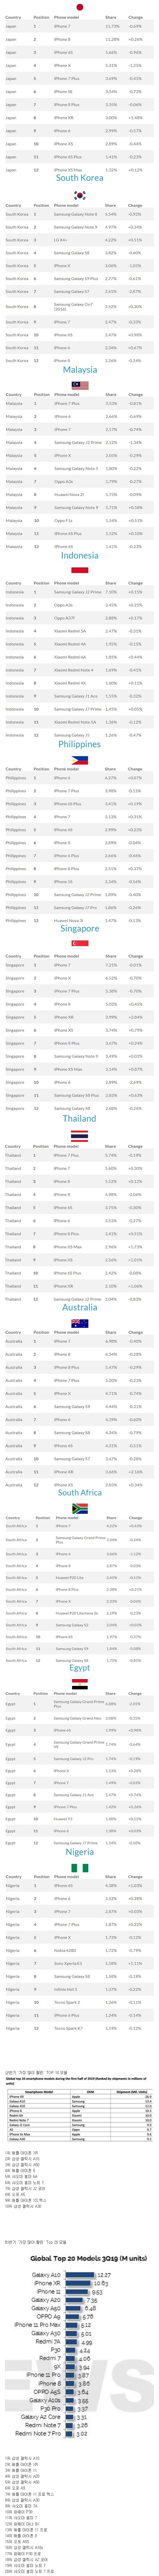  전세계 국가별 스마트폰 모델 점유율 순위